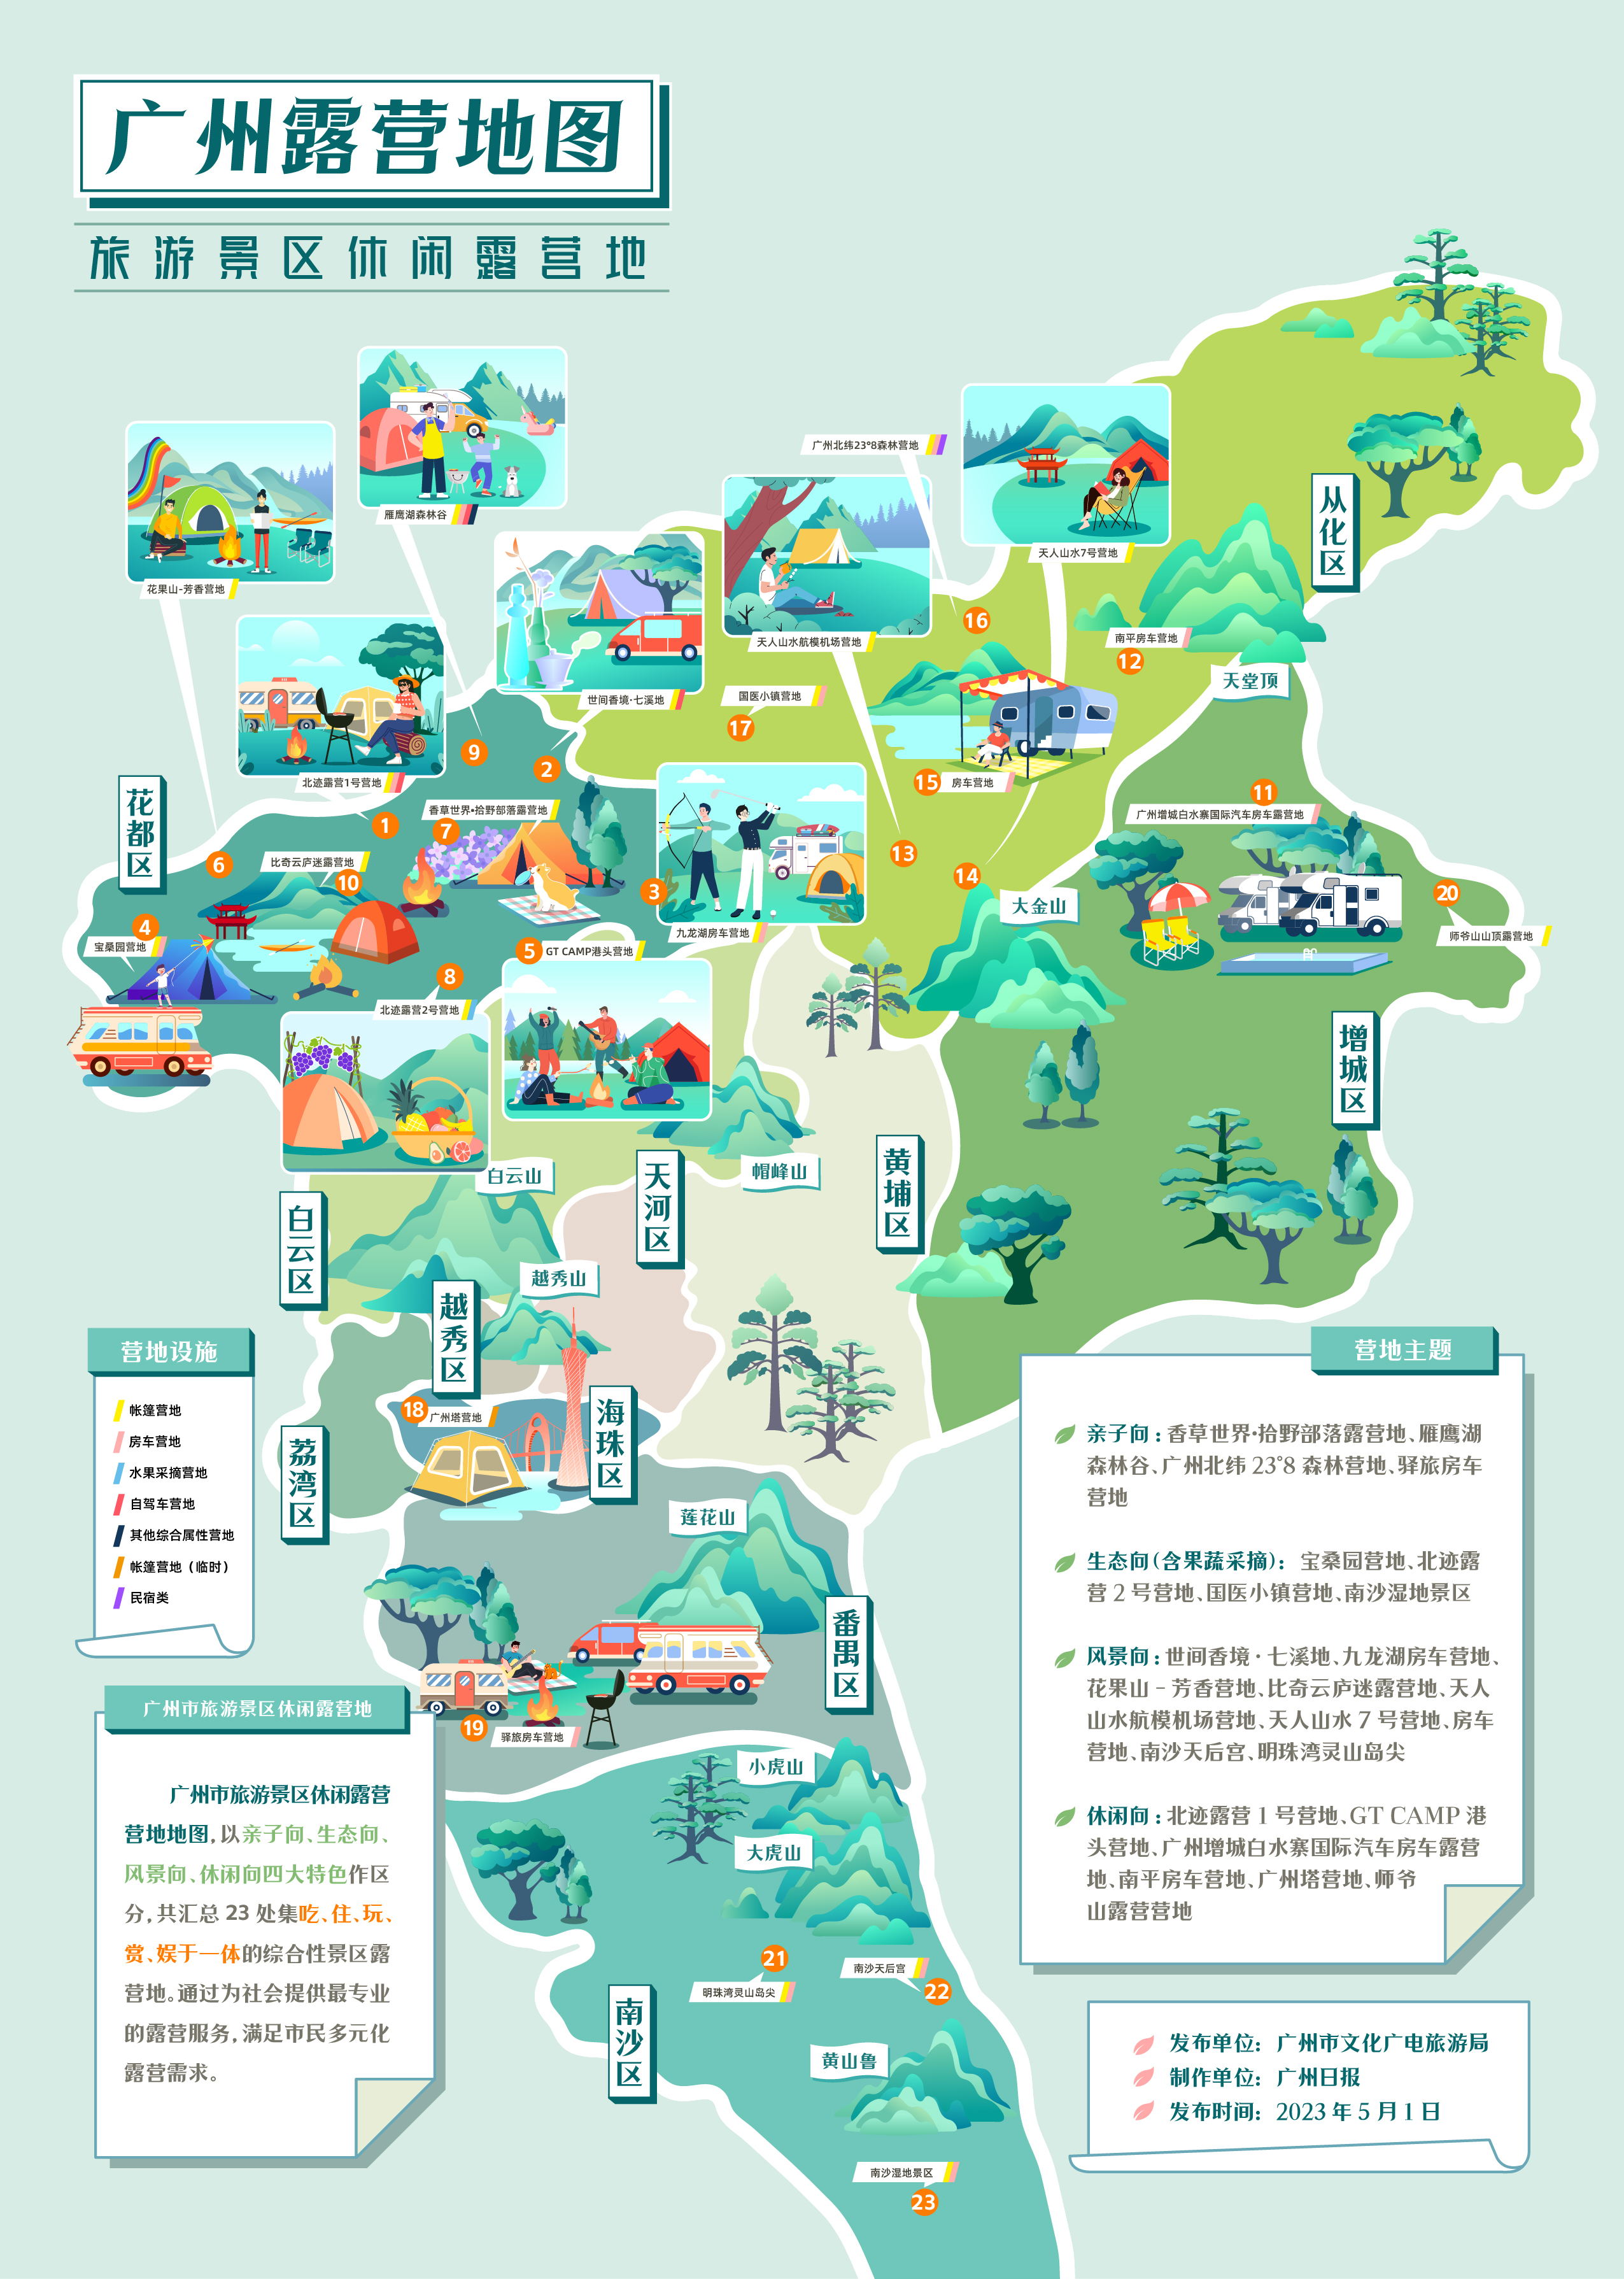 广州露营地图首发!2023广州露营季开启初夏美好时光